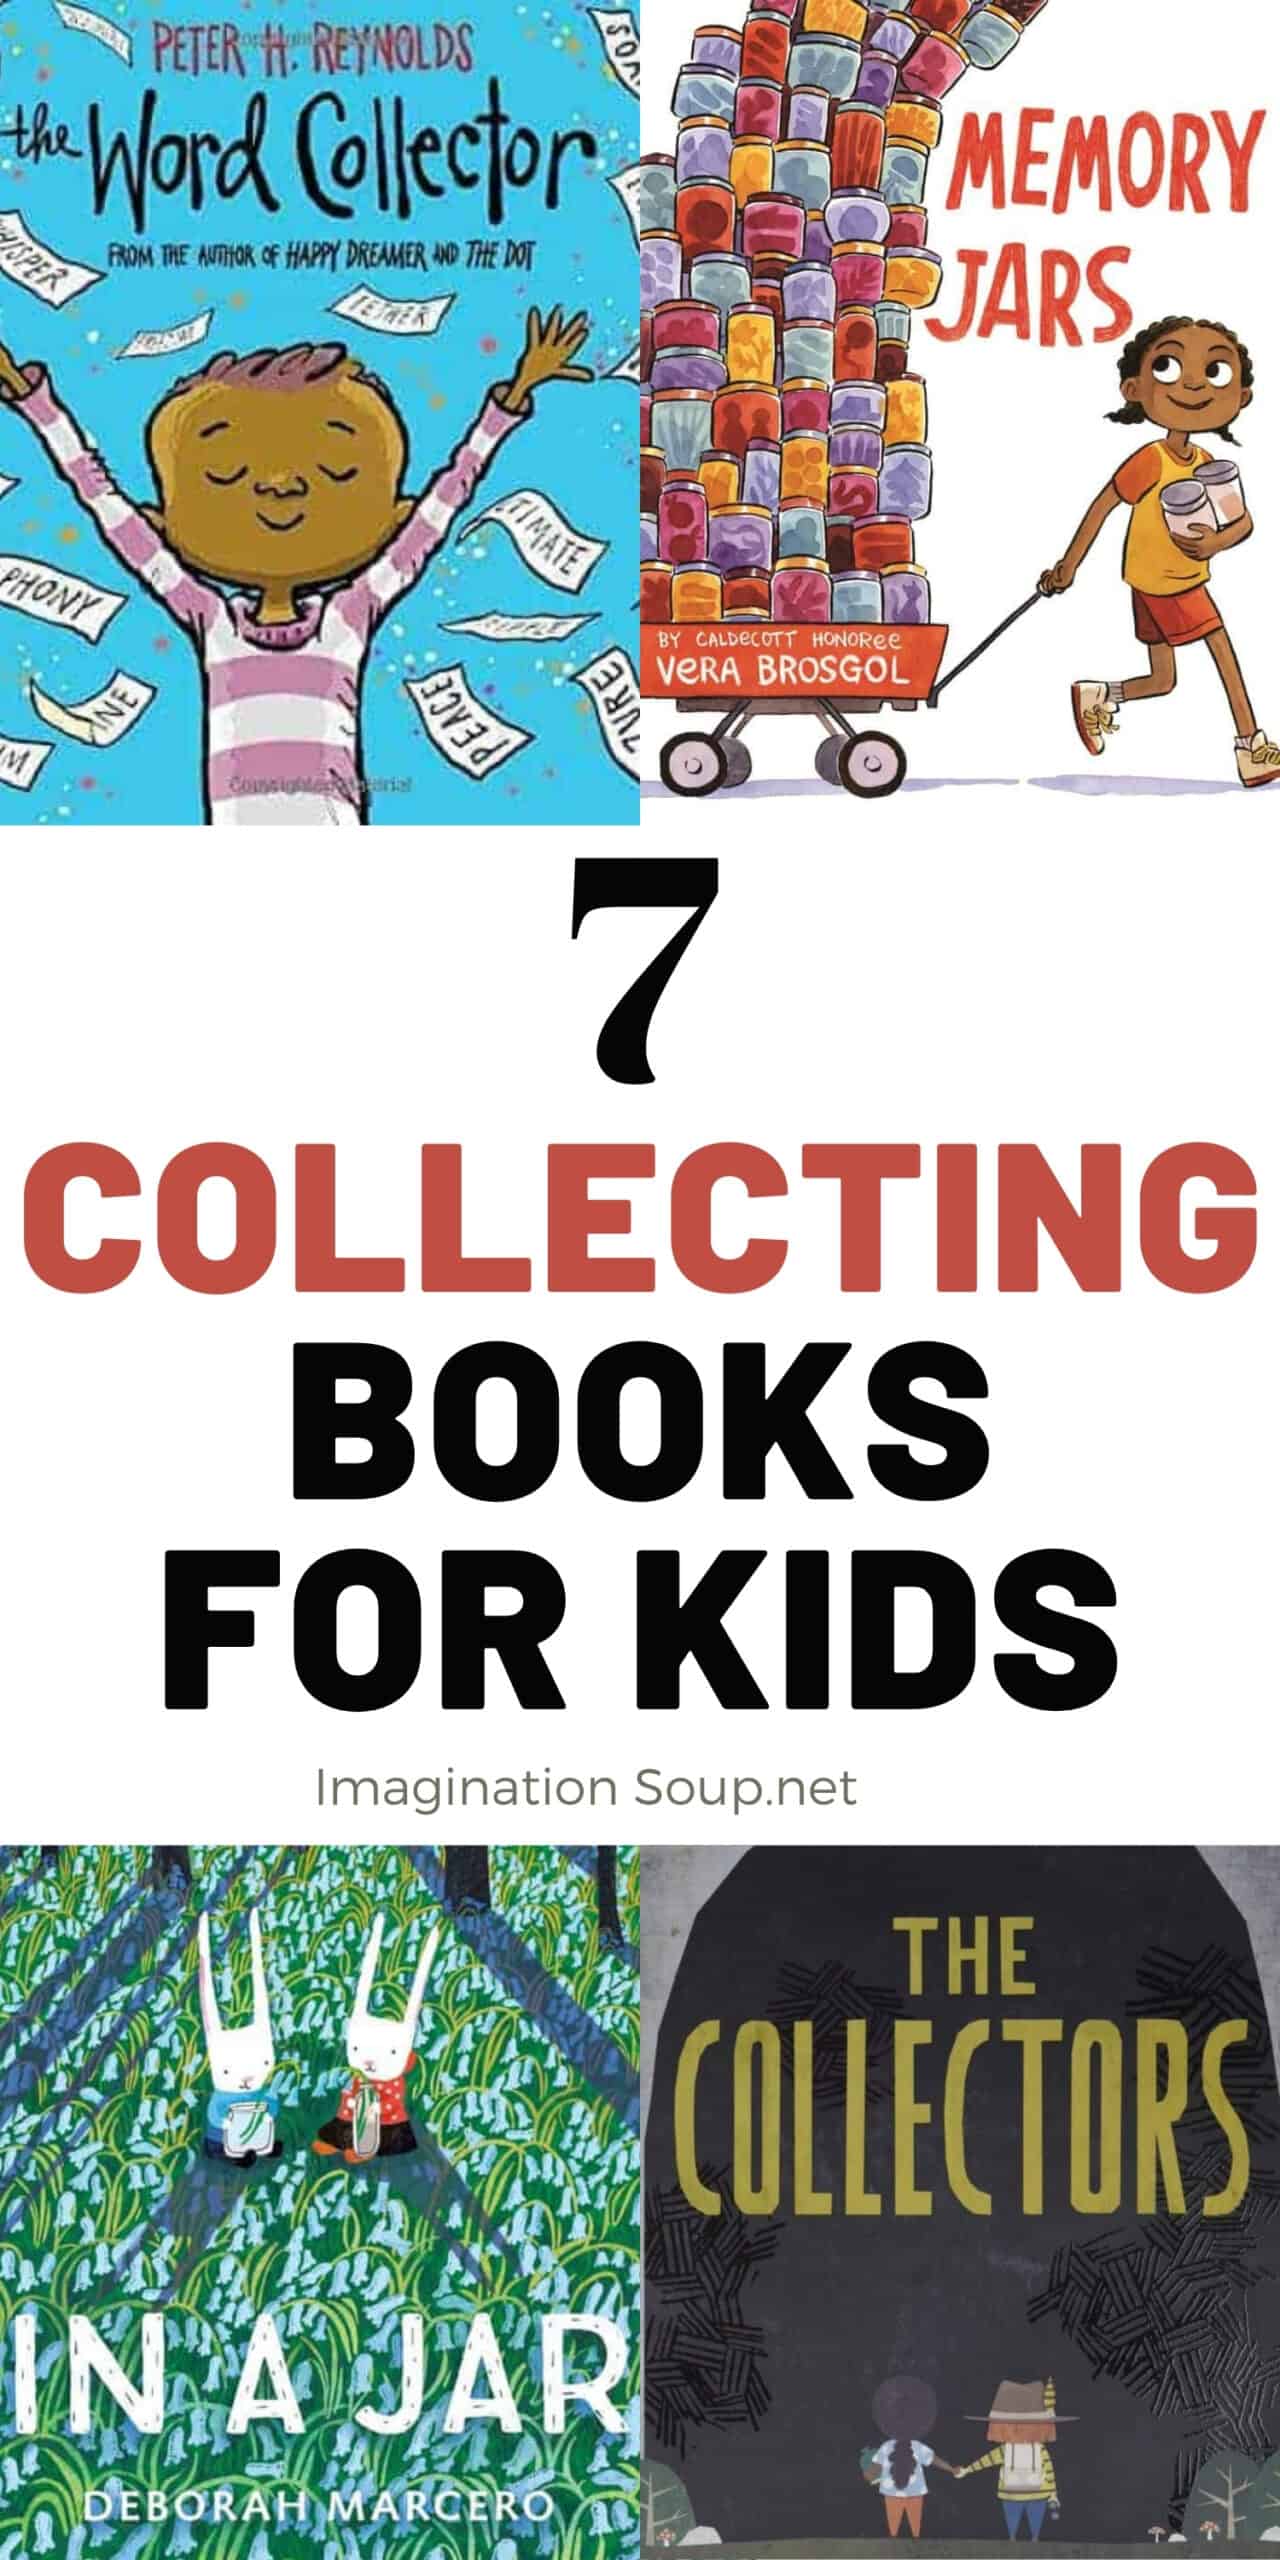 Libros para niños a los que les gusta coleccionar cosas.